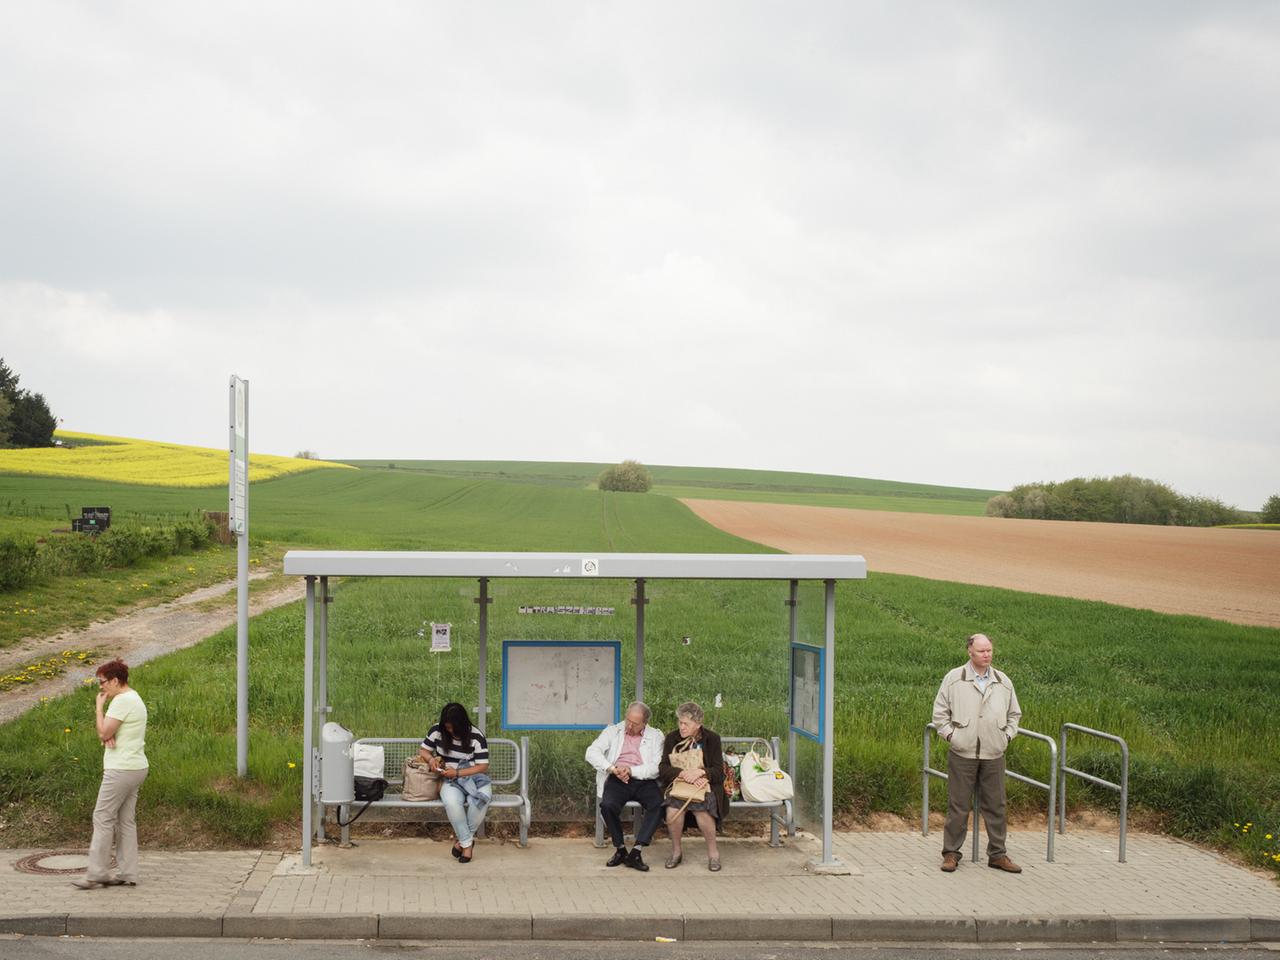 Bushaltestelle mit wartenden Menschen, Ebergötzen bei Göttingen, Zweite Heimat, Foto-Reihe von Fotograf Peter Bialobrzeski